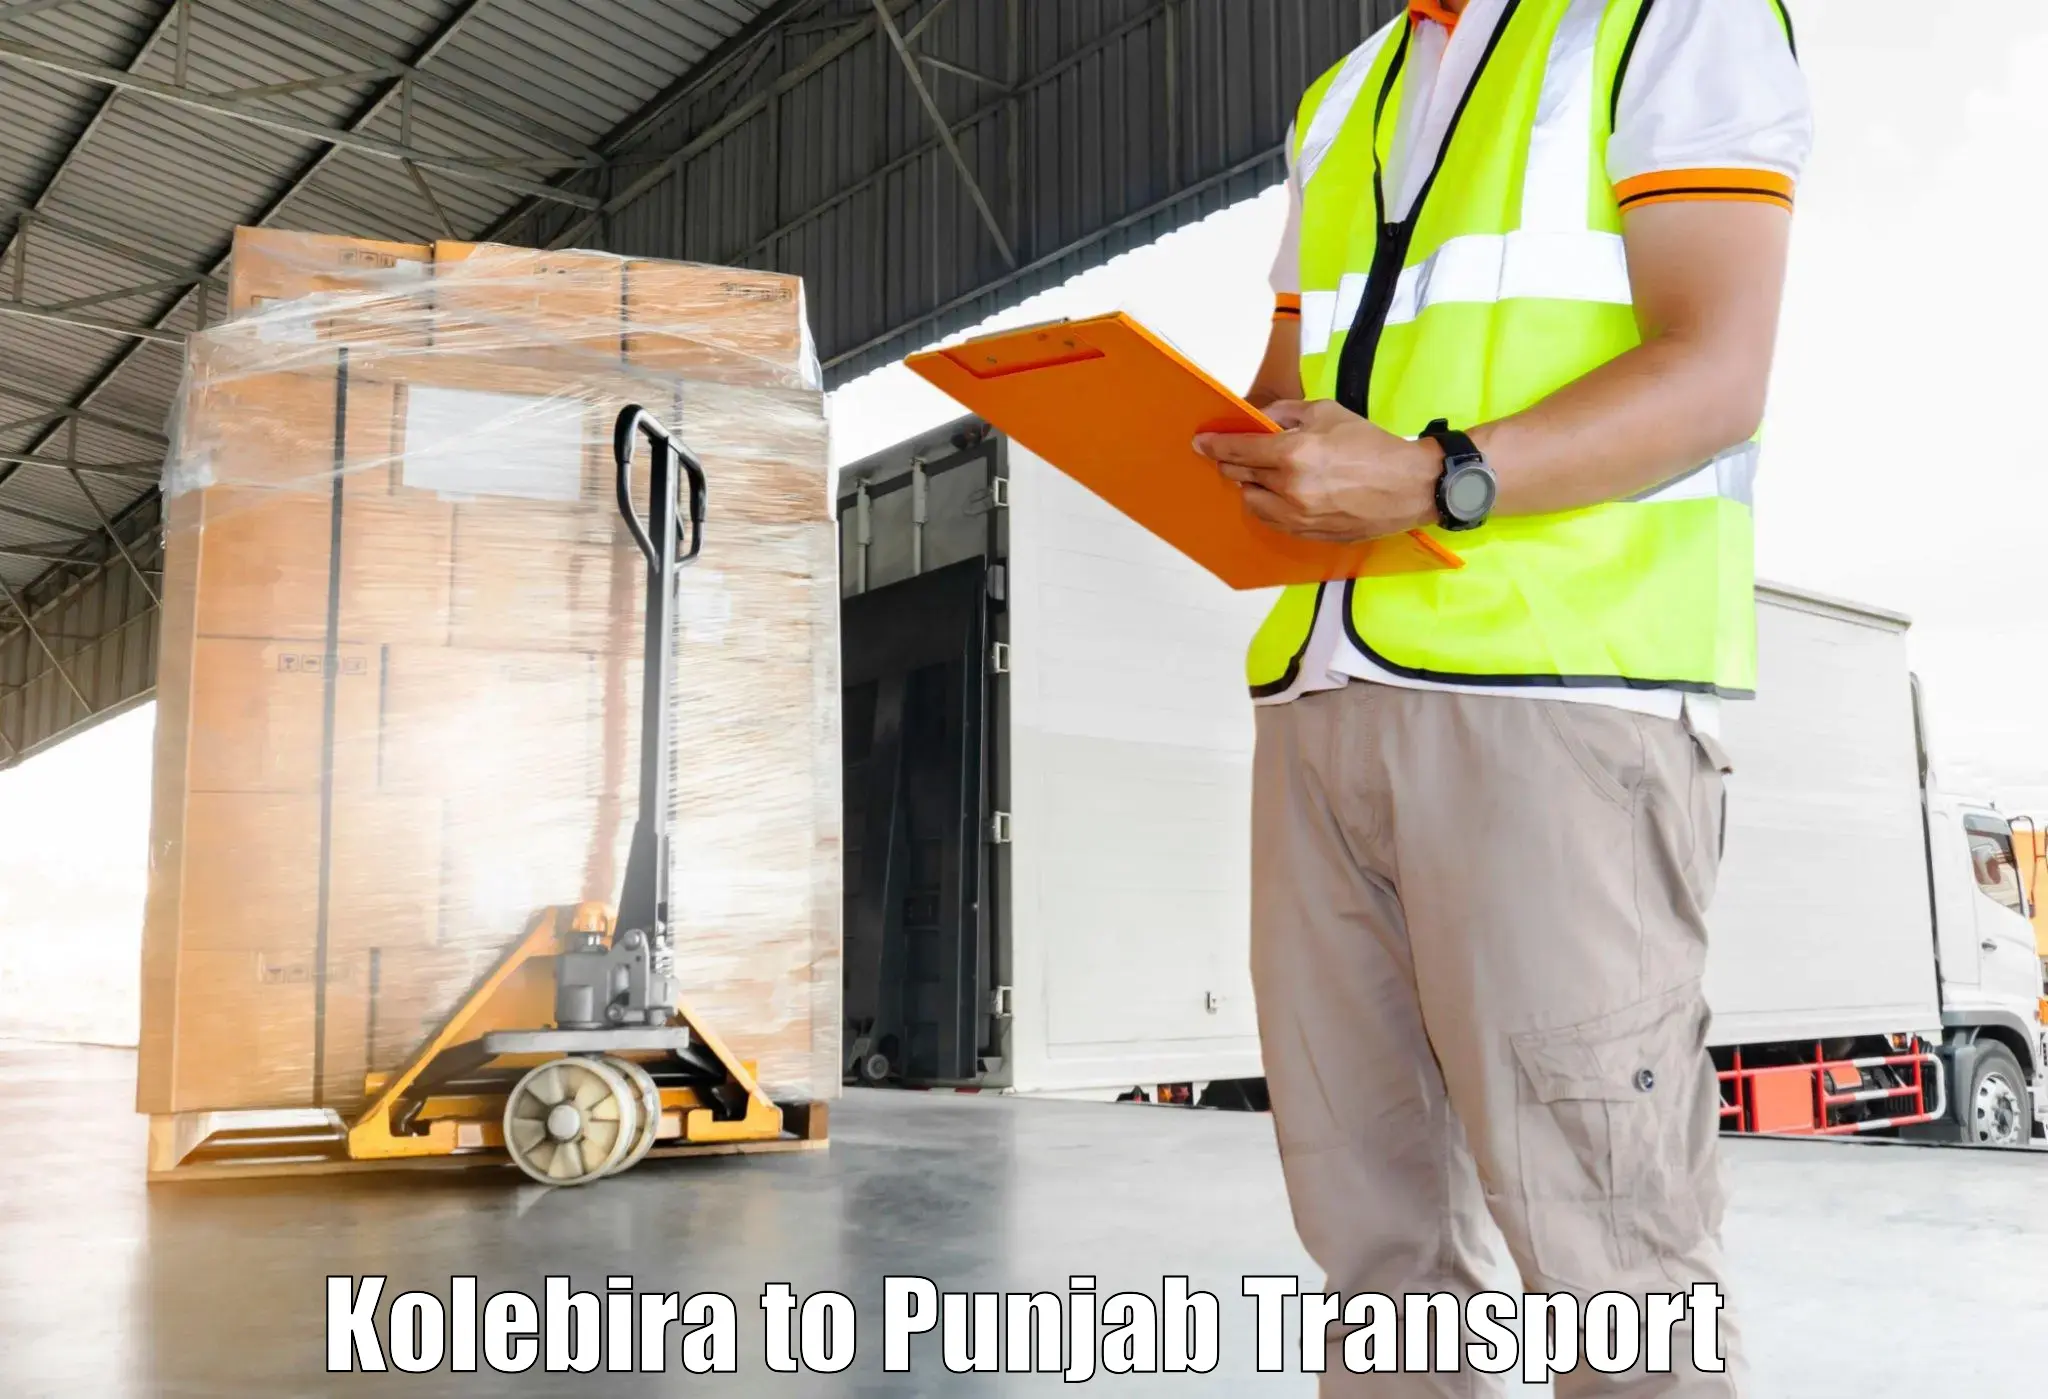 Transport in sharing Kolebira to Amritsar